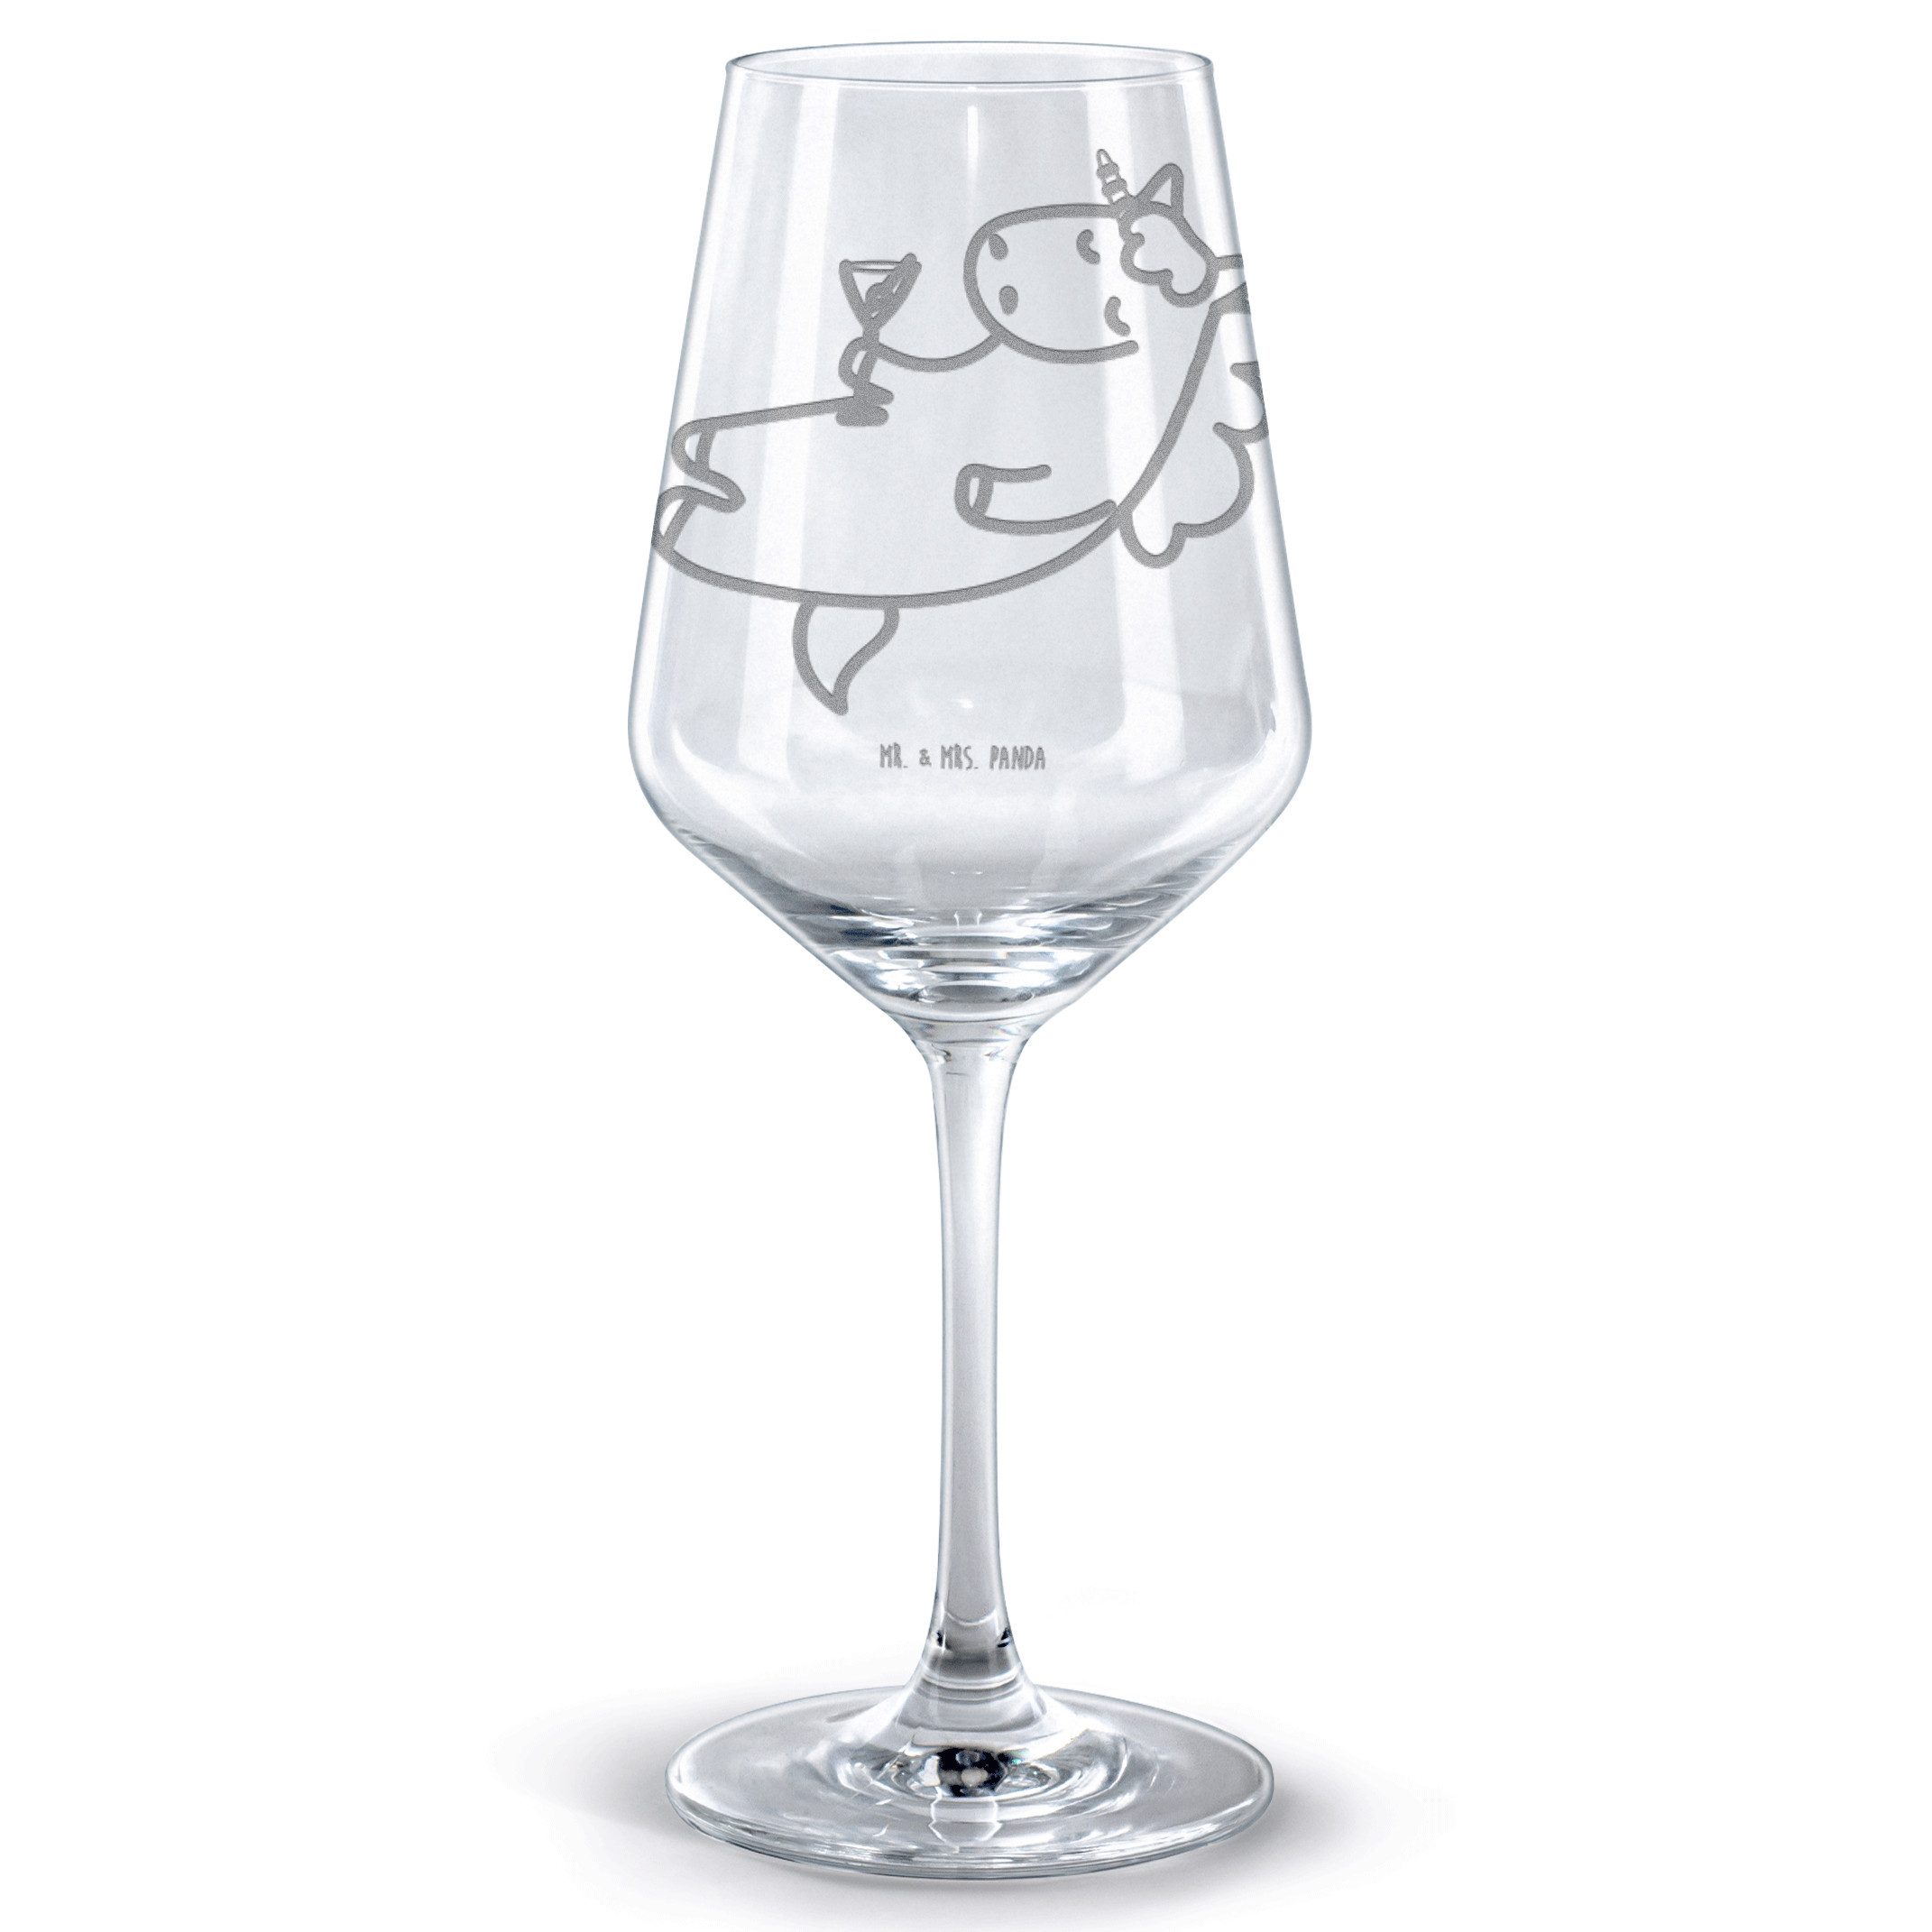 Mr. & Mrs. Panda Rotweinglas Einhorn Cocktail - Transparent - Geschenk, Hochwertige Weinaccessoire, Premium Glas, Spülmaschinenfest